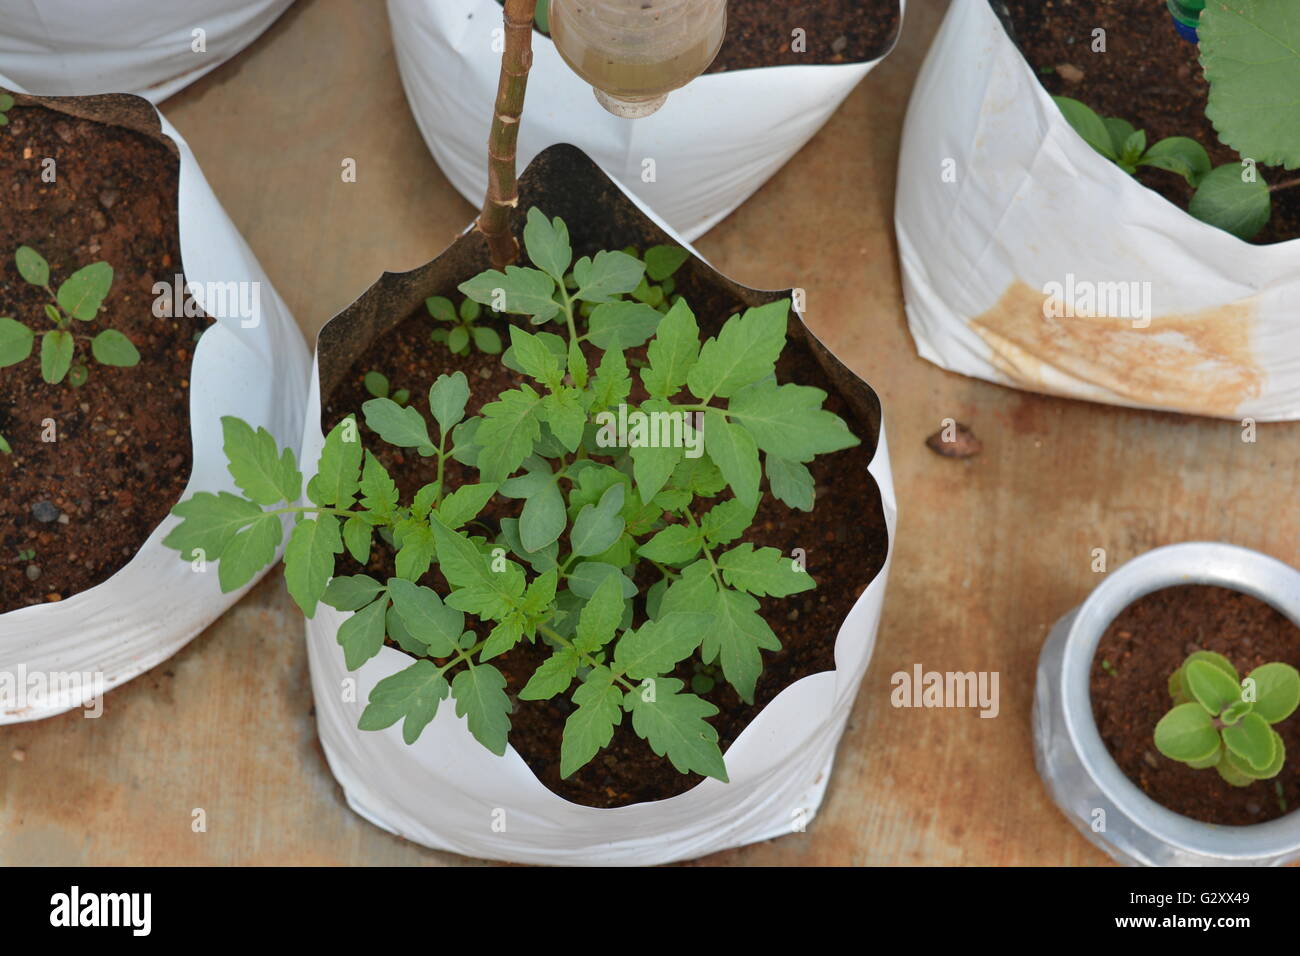 https://c8.alamy.com/comp/G2XX49/tomato-plant-in-a-grow-bag-G2XX49.jpg